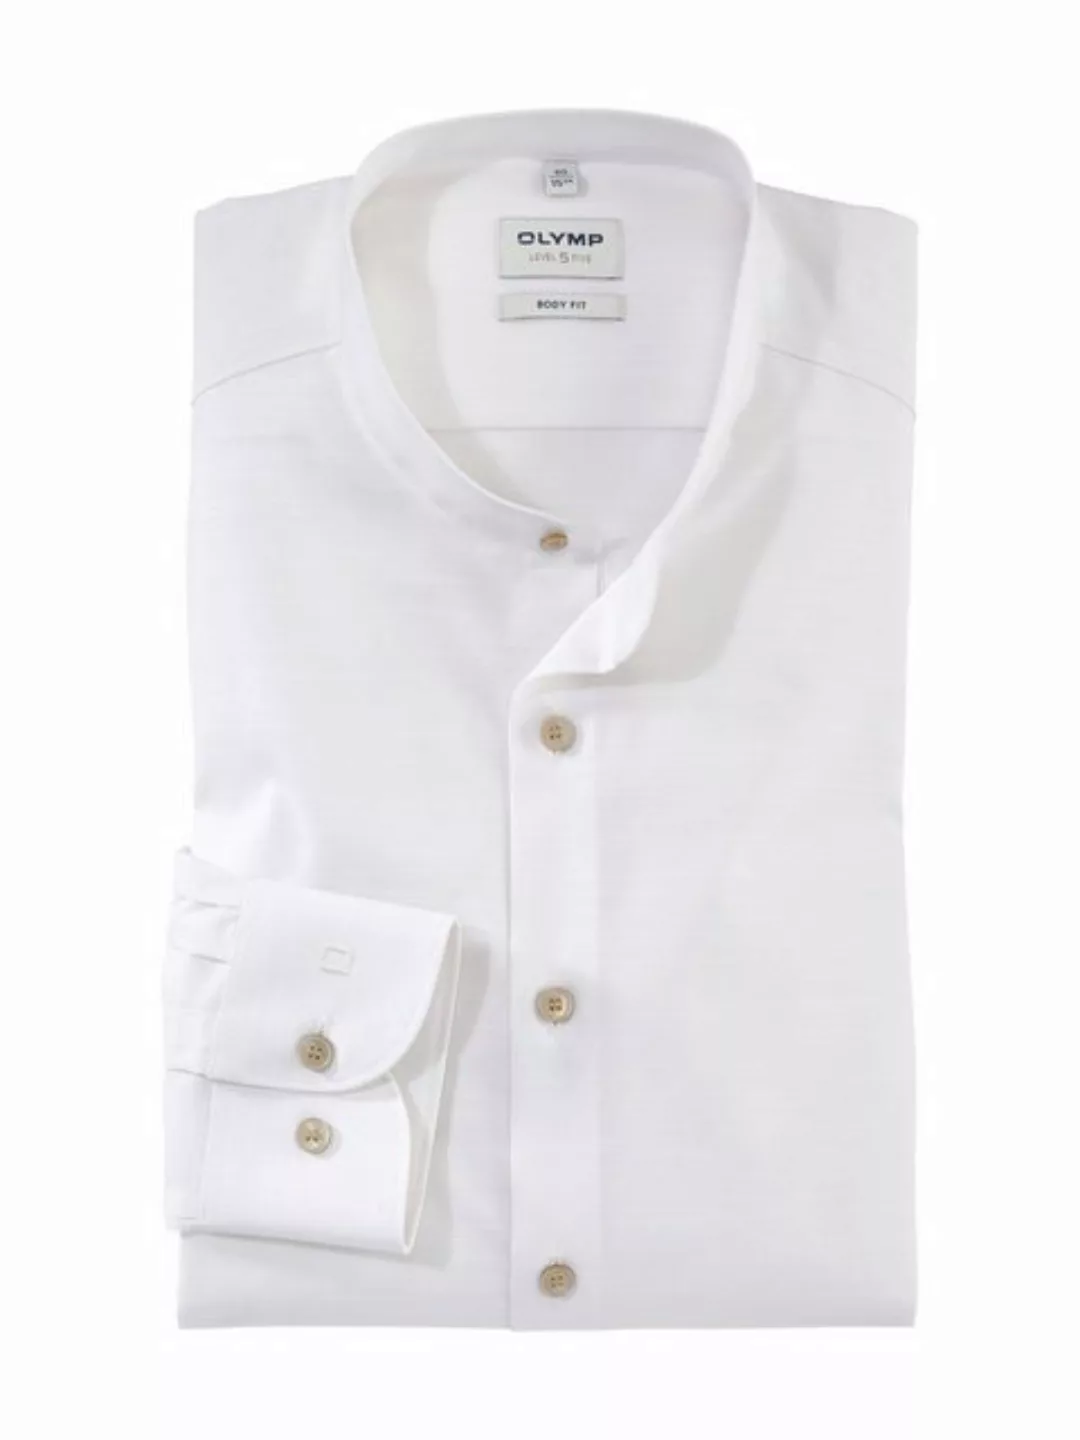 OLYMP Leinenhemd 2136/34 Hemden günstig online kaufen